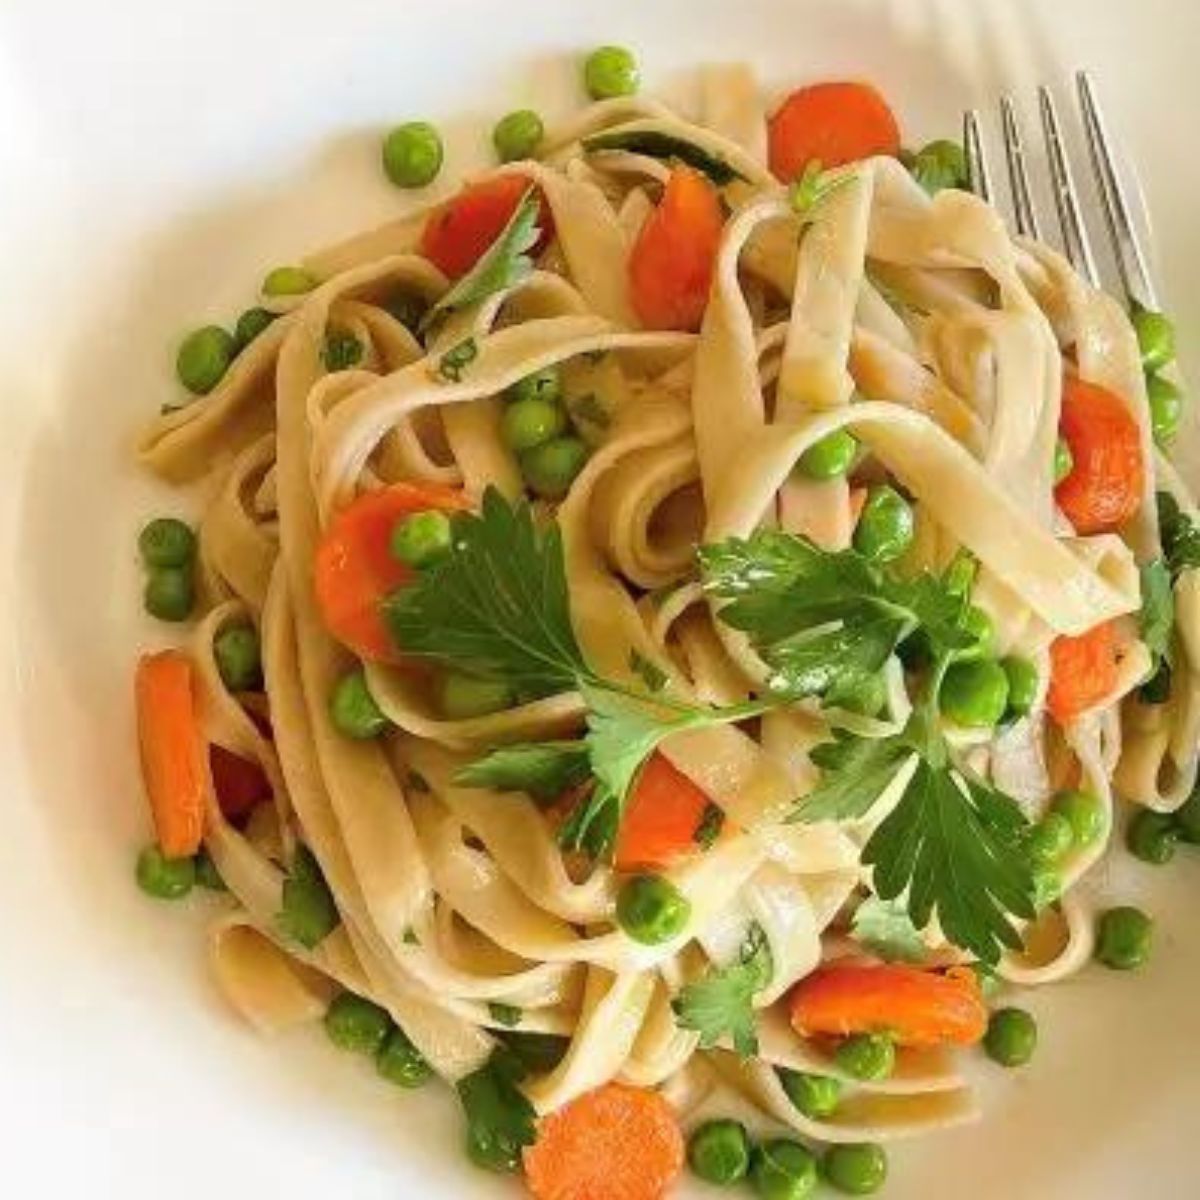 carrot fettuccine, valente pasta, olive and basket